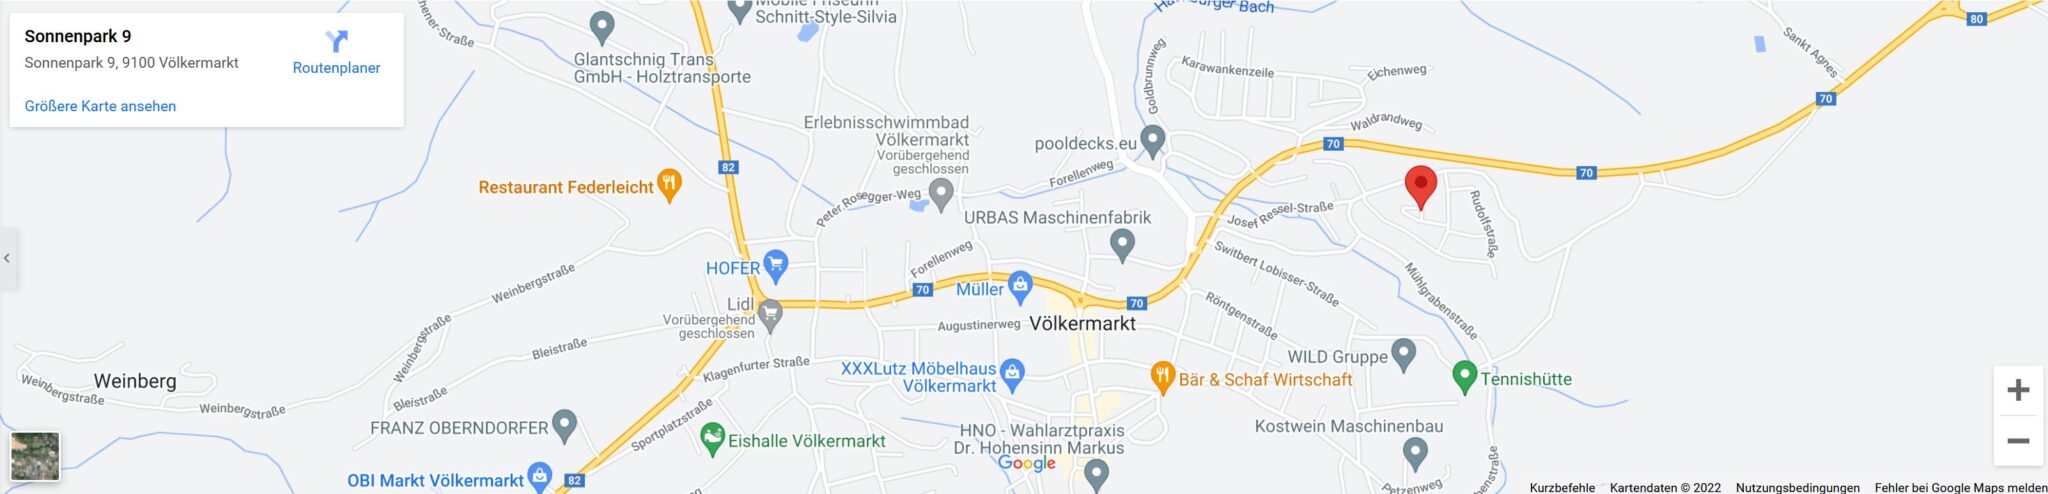 Google Maps Sonnenpark 9 Völkermarkt